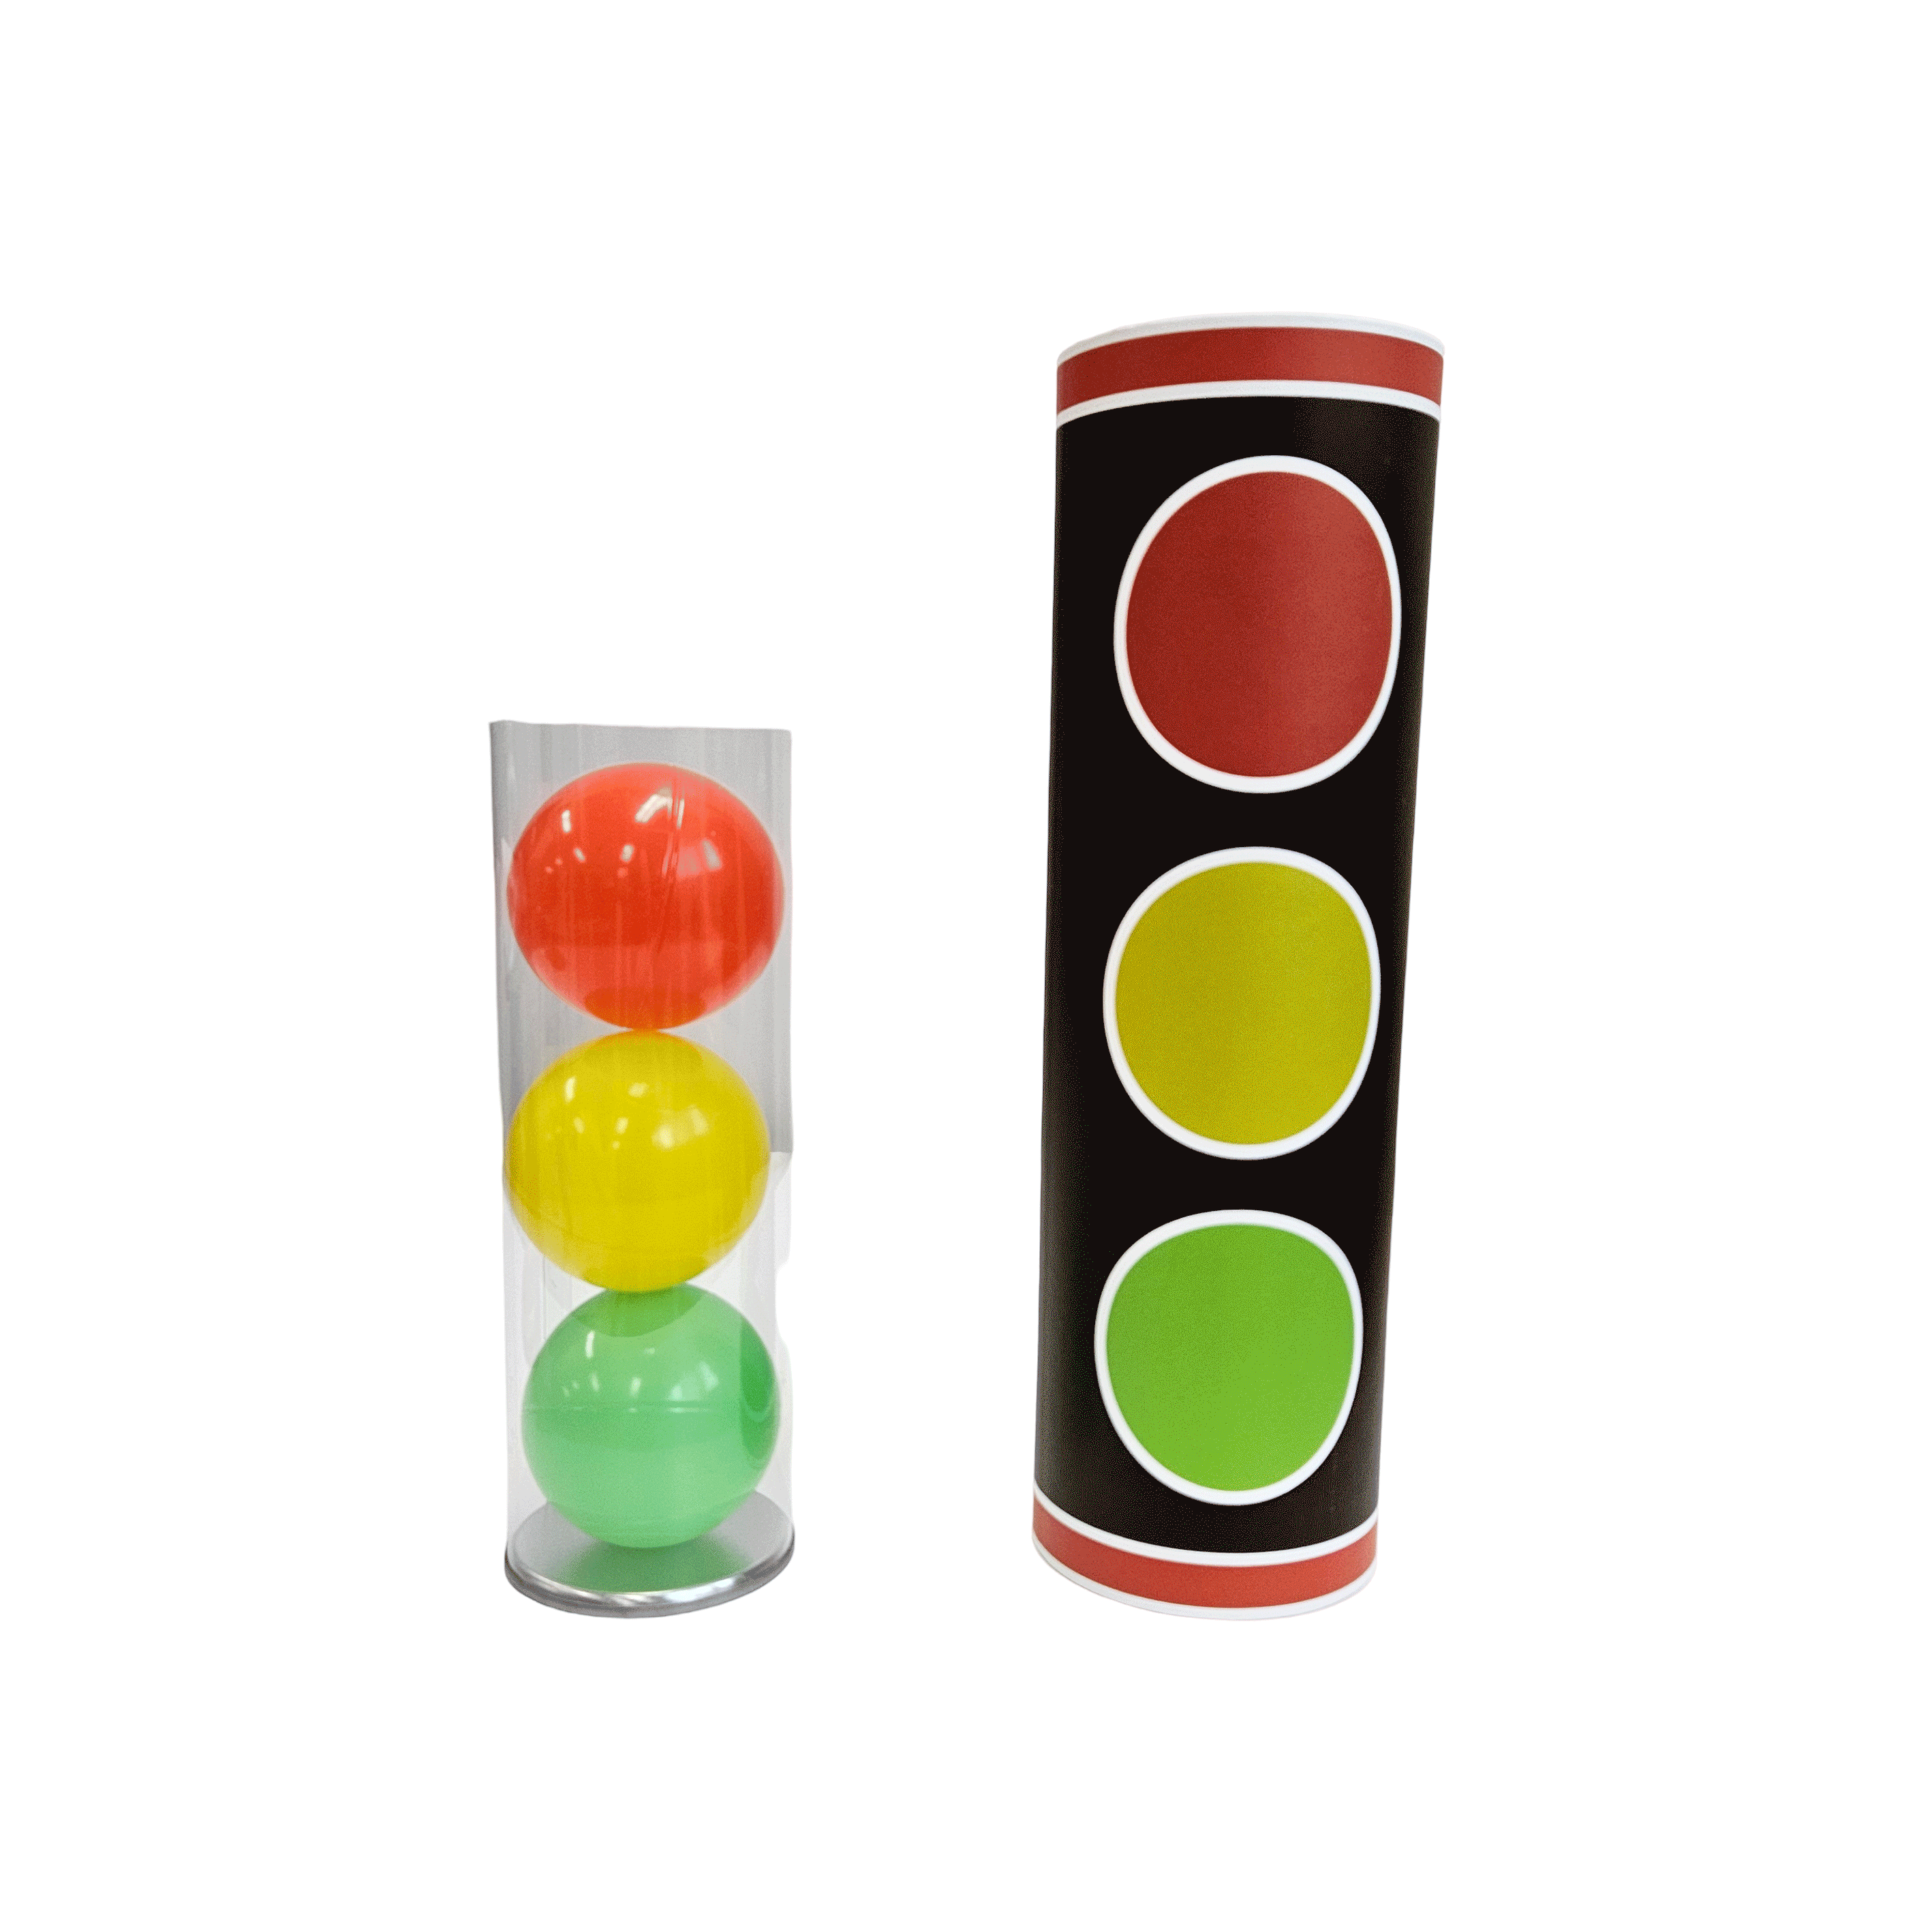 신호등(Traffic light)신호등(Traffic light)